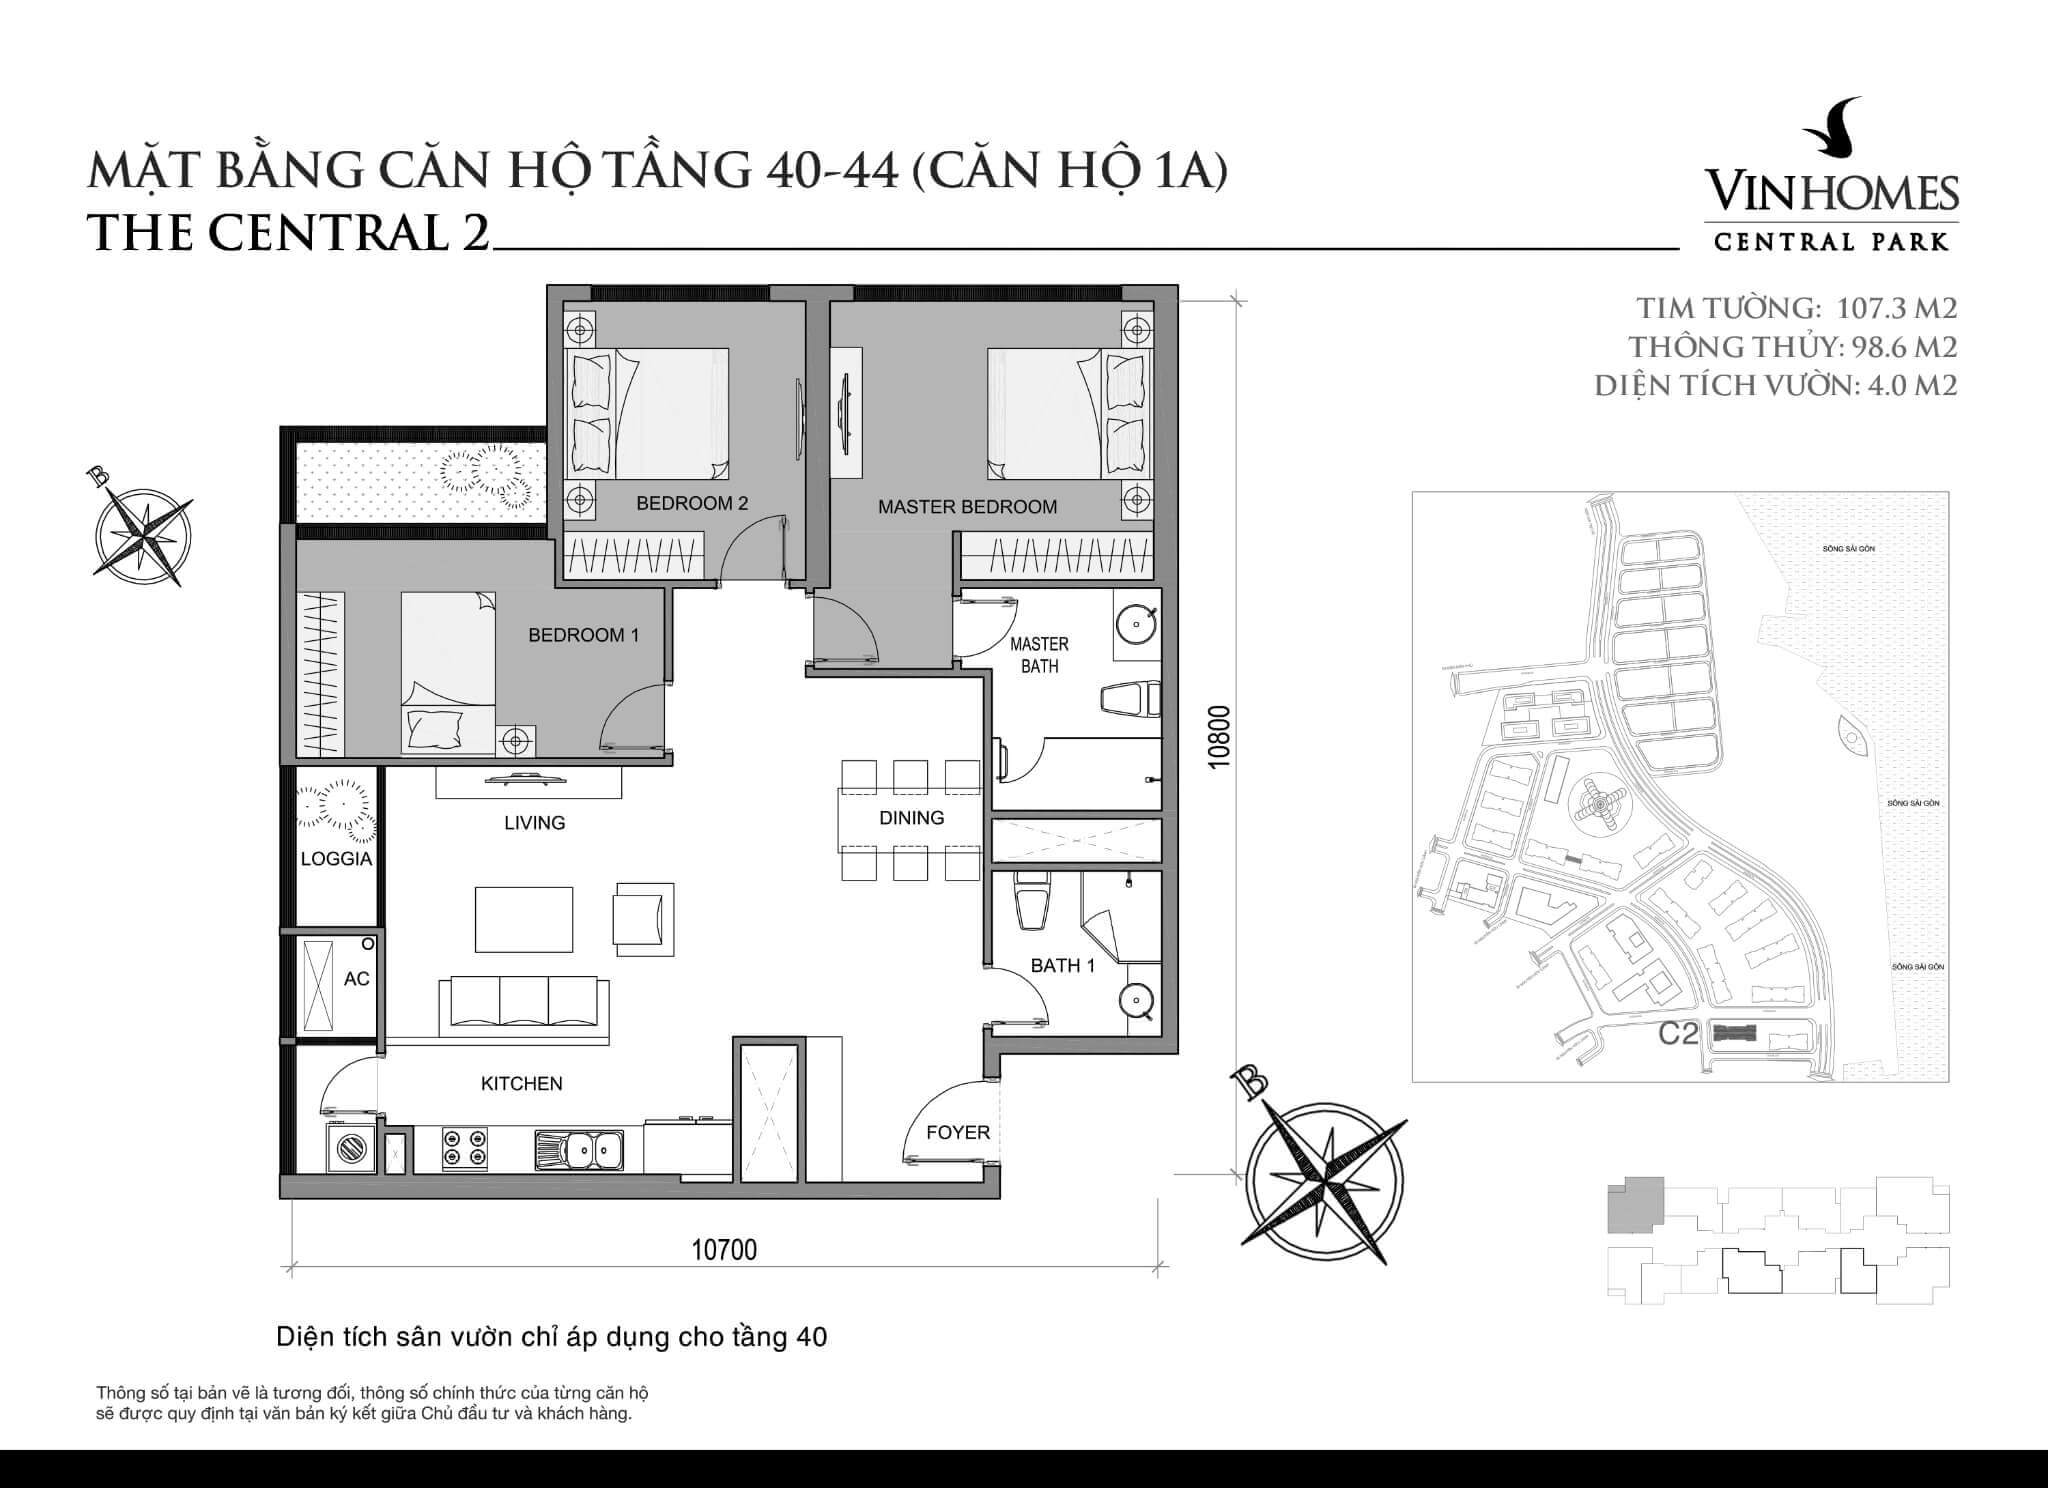 layout căn hộ số 1A tầng 40-44 Central 2